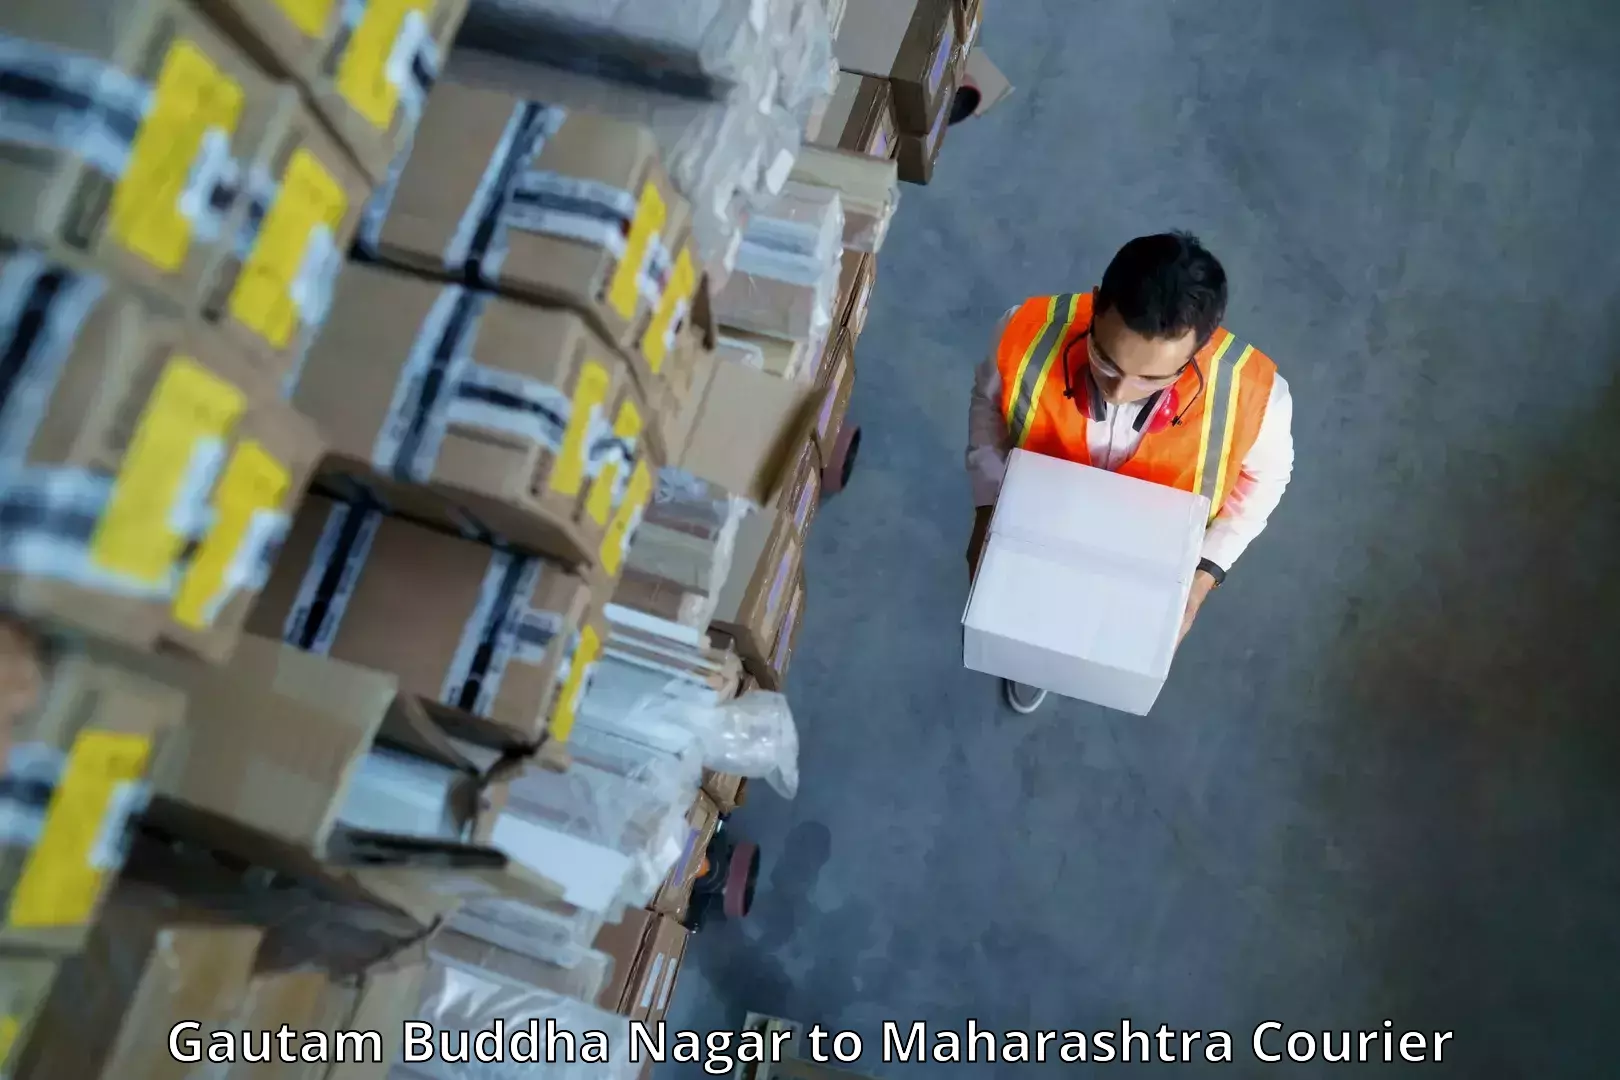 Fragile item shipping Gautam Buddha Nagar to Mumbai Port